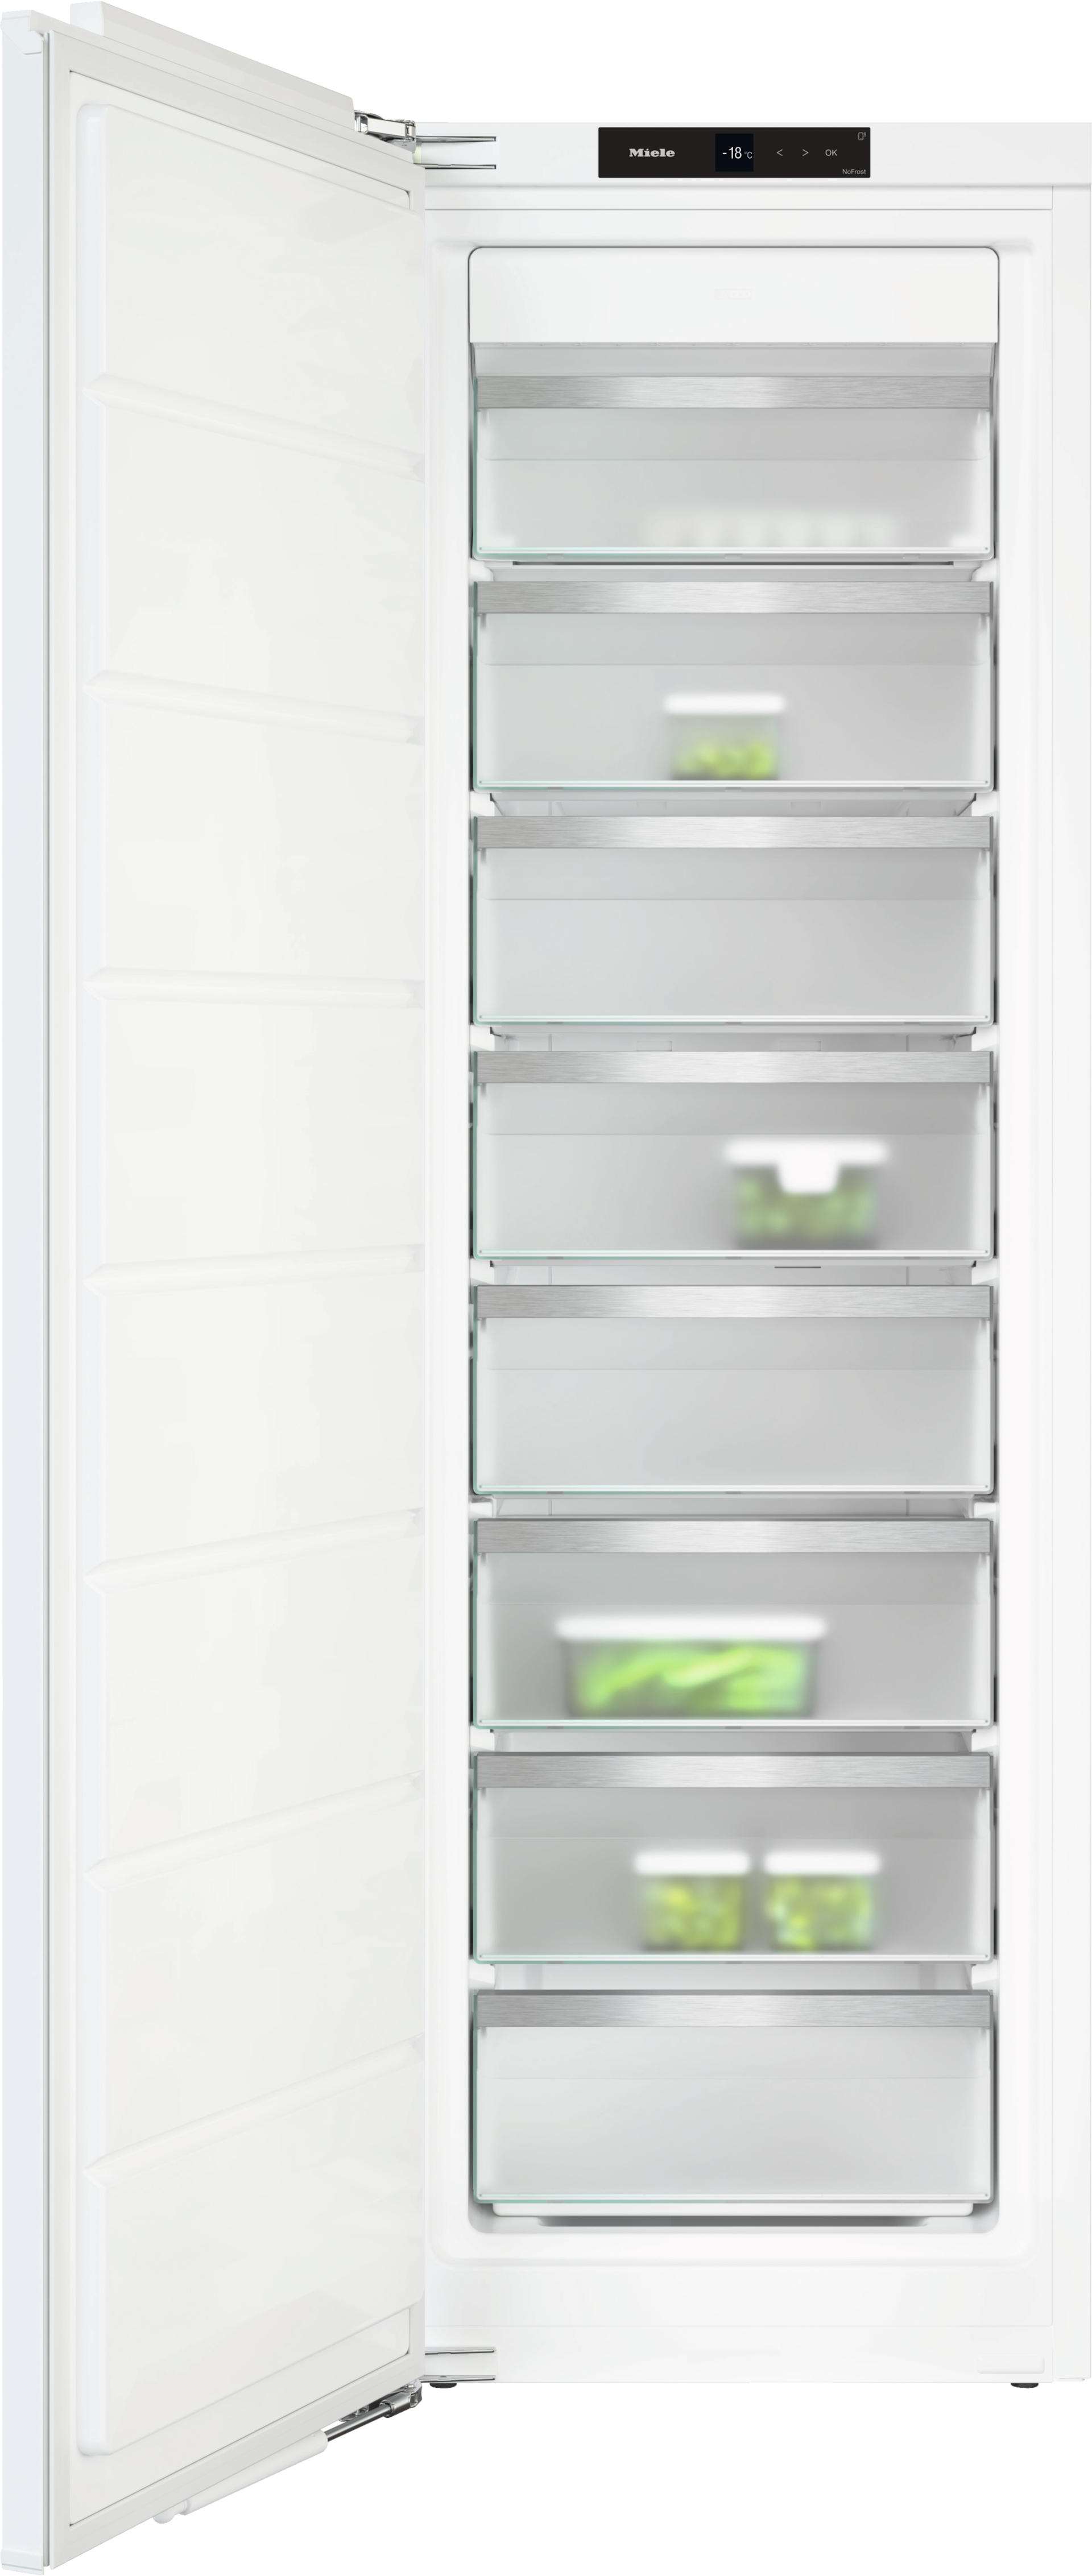 Refrigeration - FNS 7740 D - 1